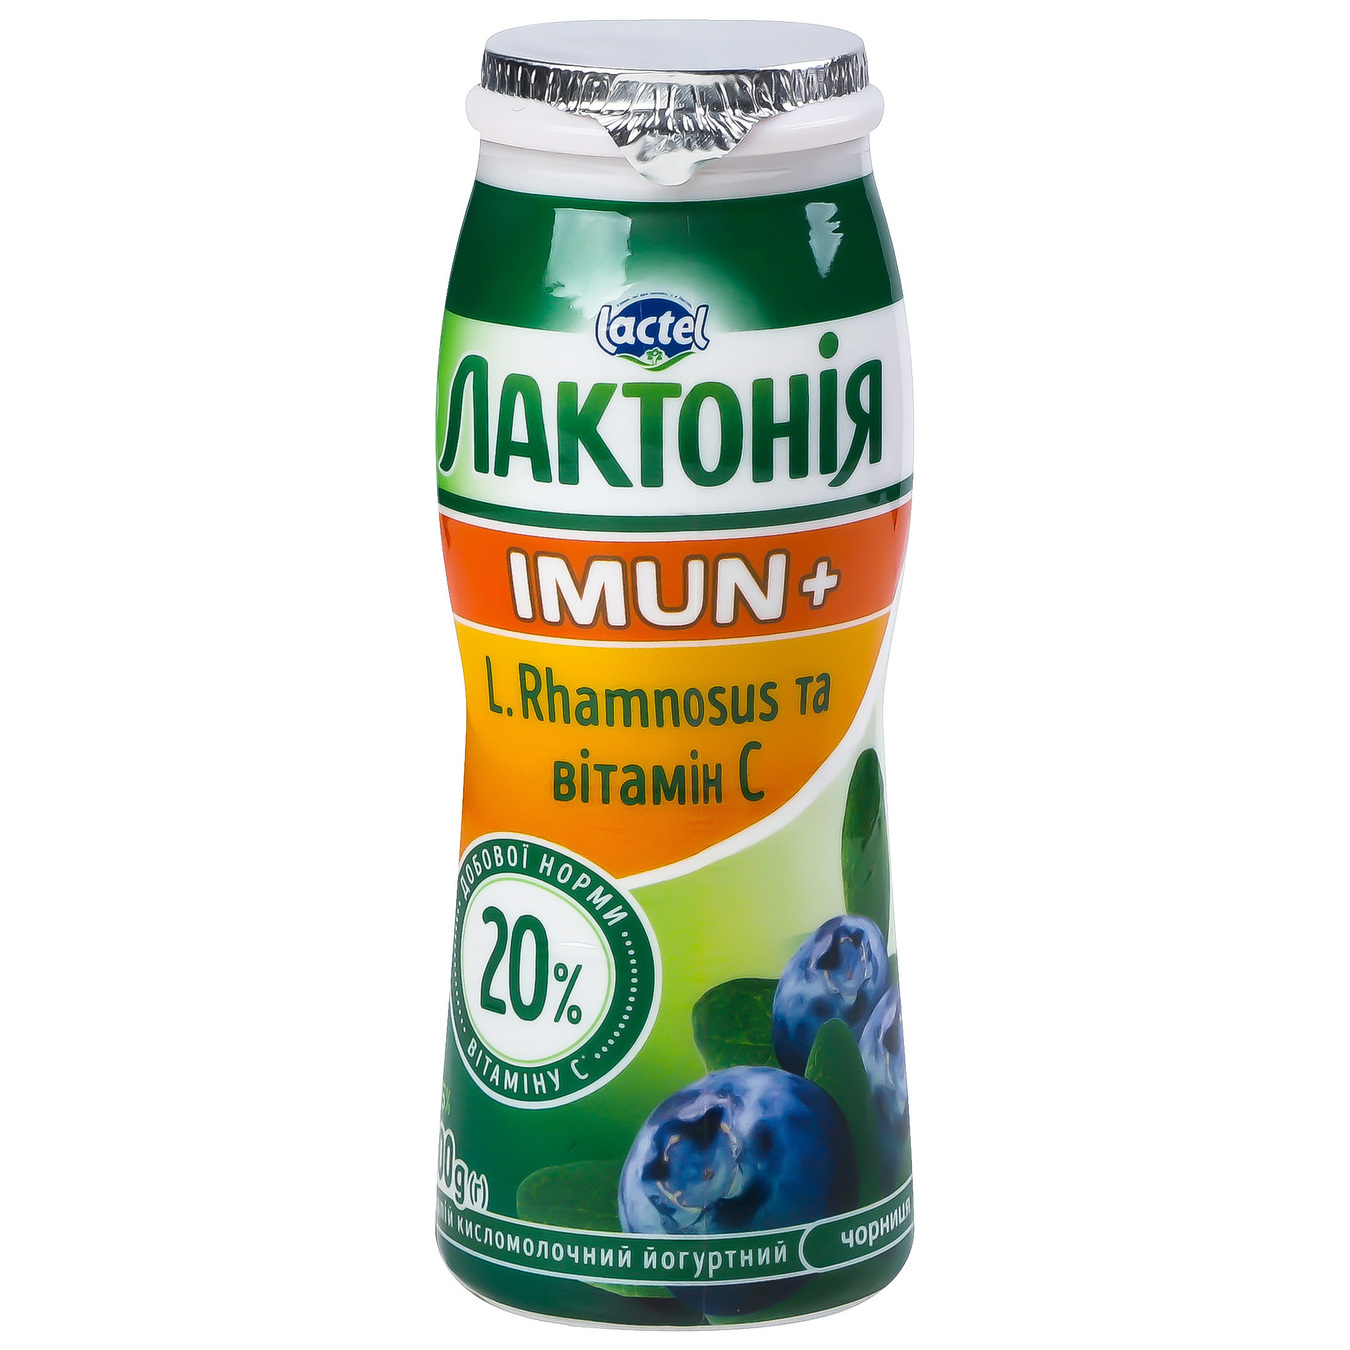 Продукт кисломолочный Лактония черника с пробиотиком L.Rhamnosus и витамином С Имун+ 1,5% 100г 2